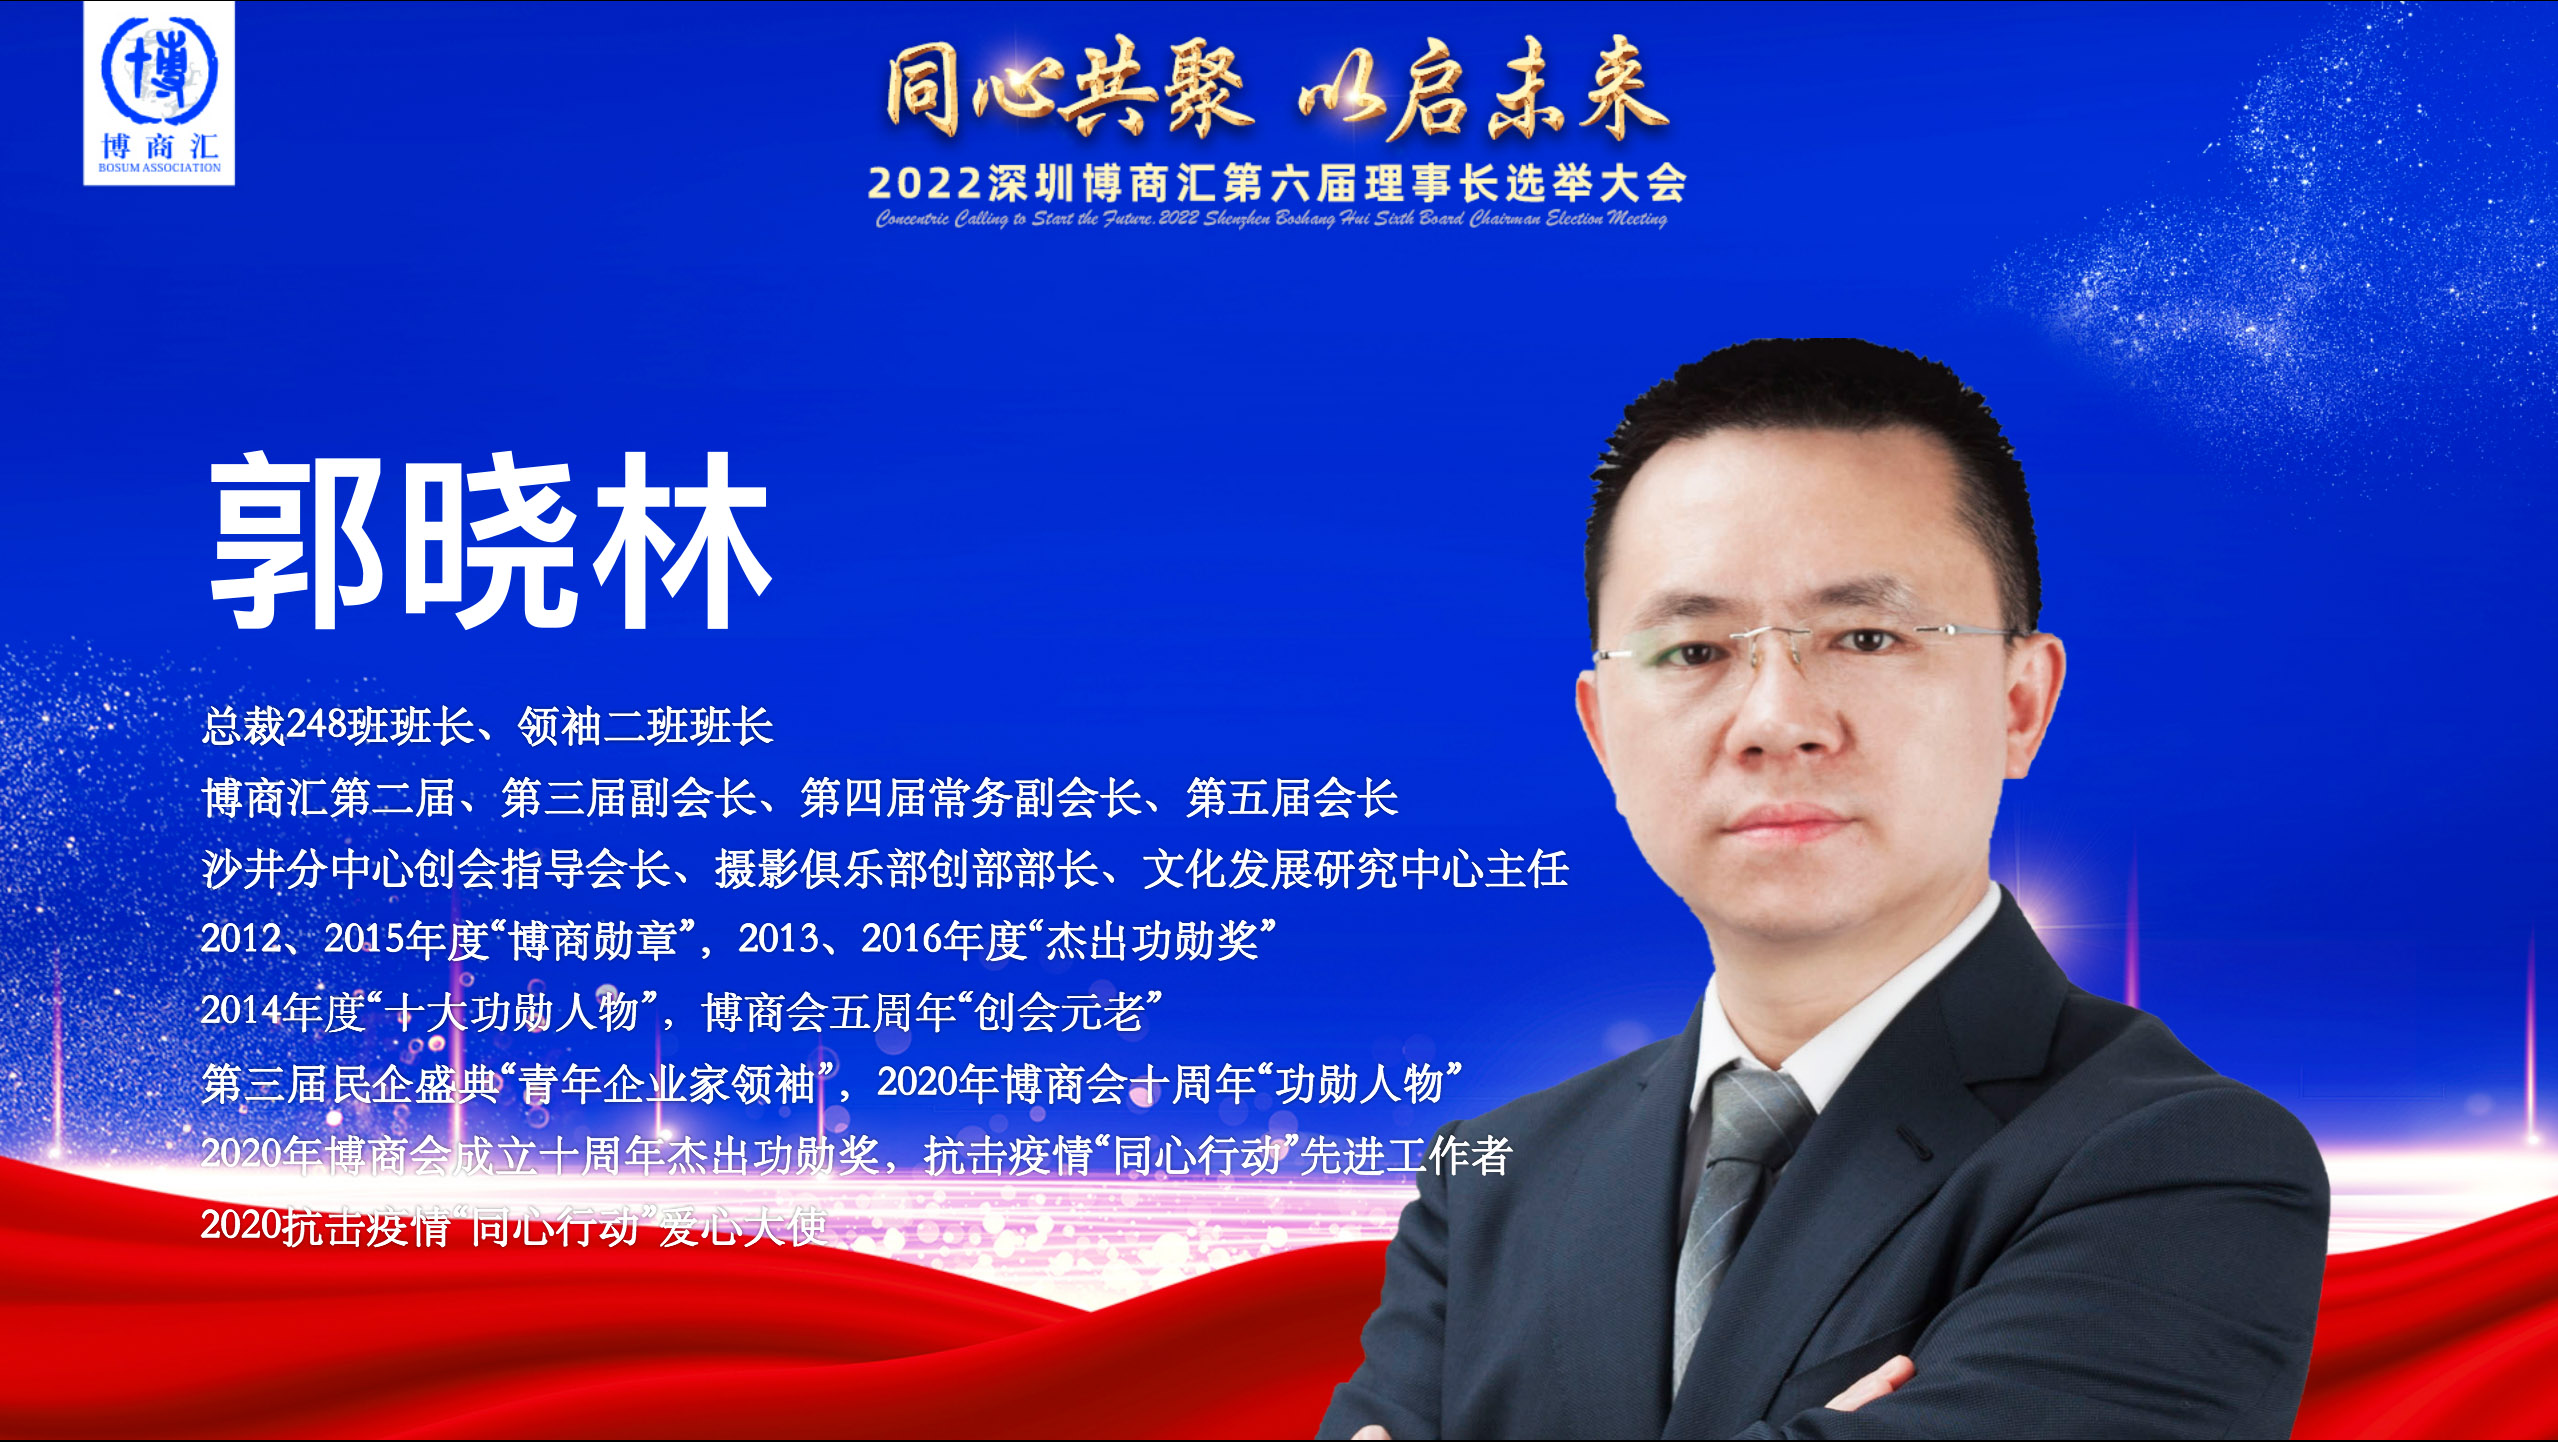 郭晓林当选第六届理事长